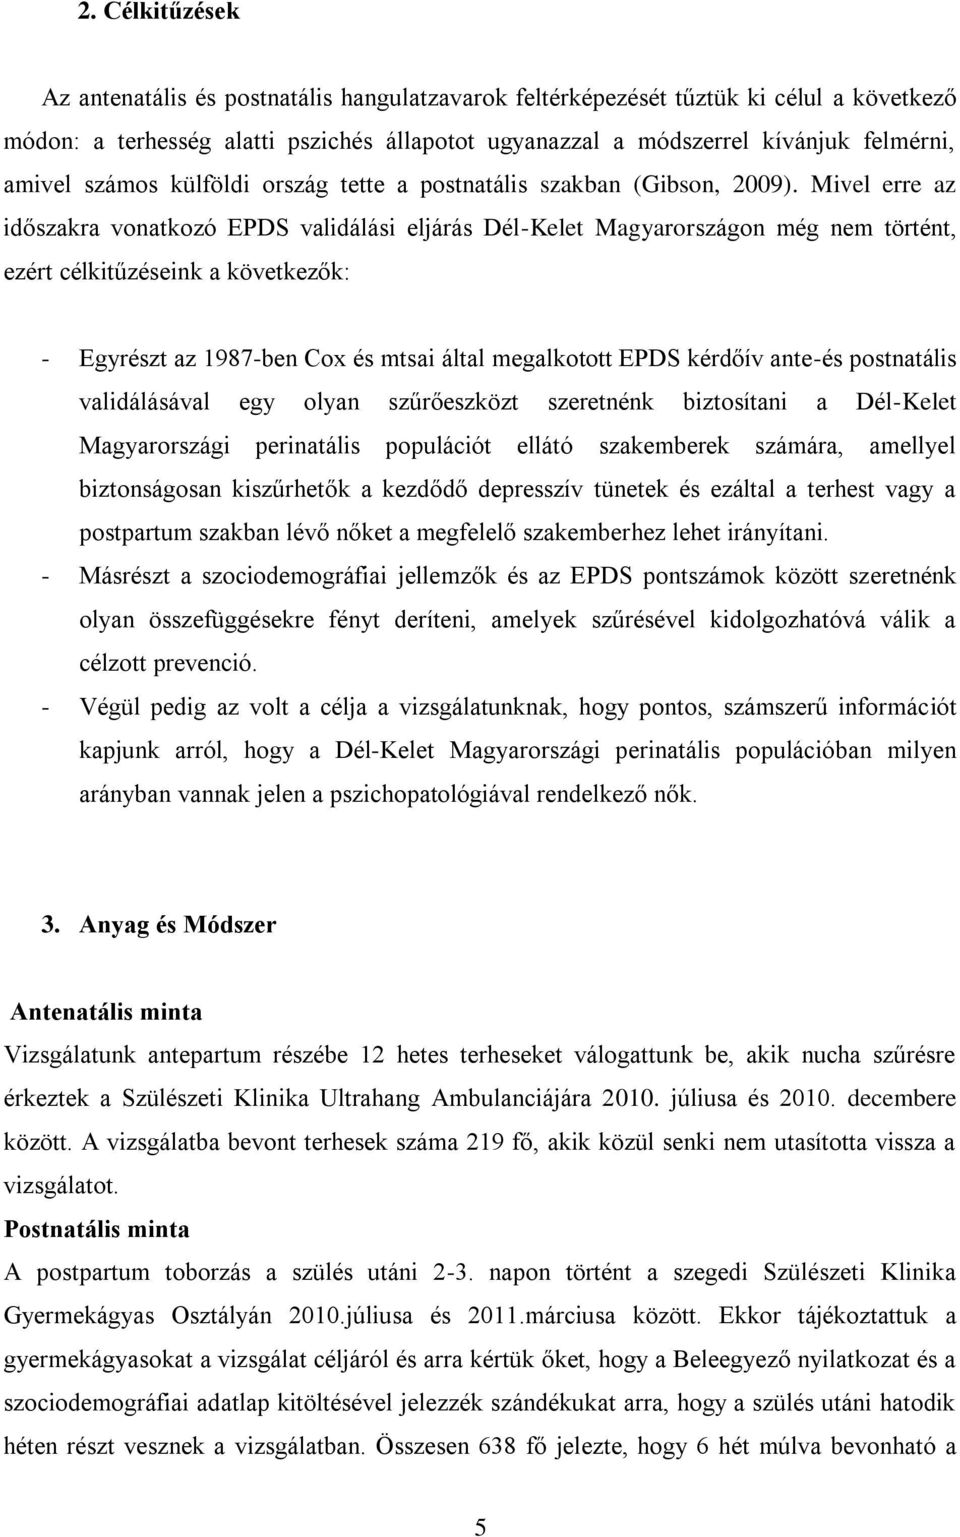 Mivel erre az időszakra vonatkozó EPDS validálási eljárás Dél-Kelet Magyarországon még nem történt, ezért célkitűzéseink a következők: - Egyrészt az 1987-ben Cox és mtsai által megalkotott EPDS